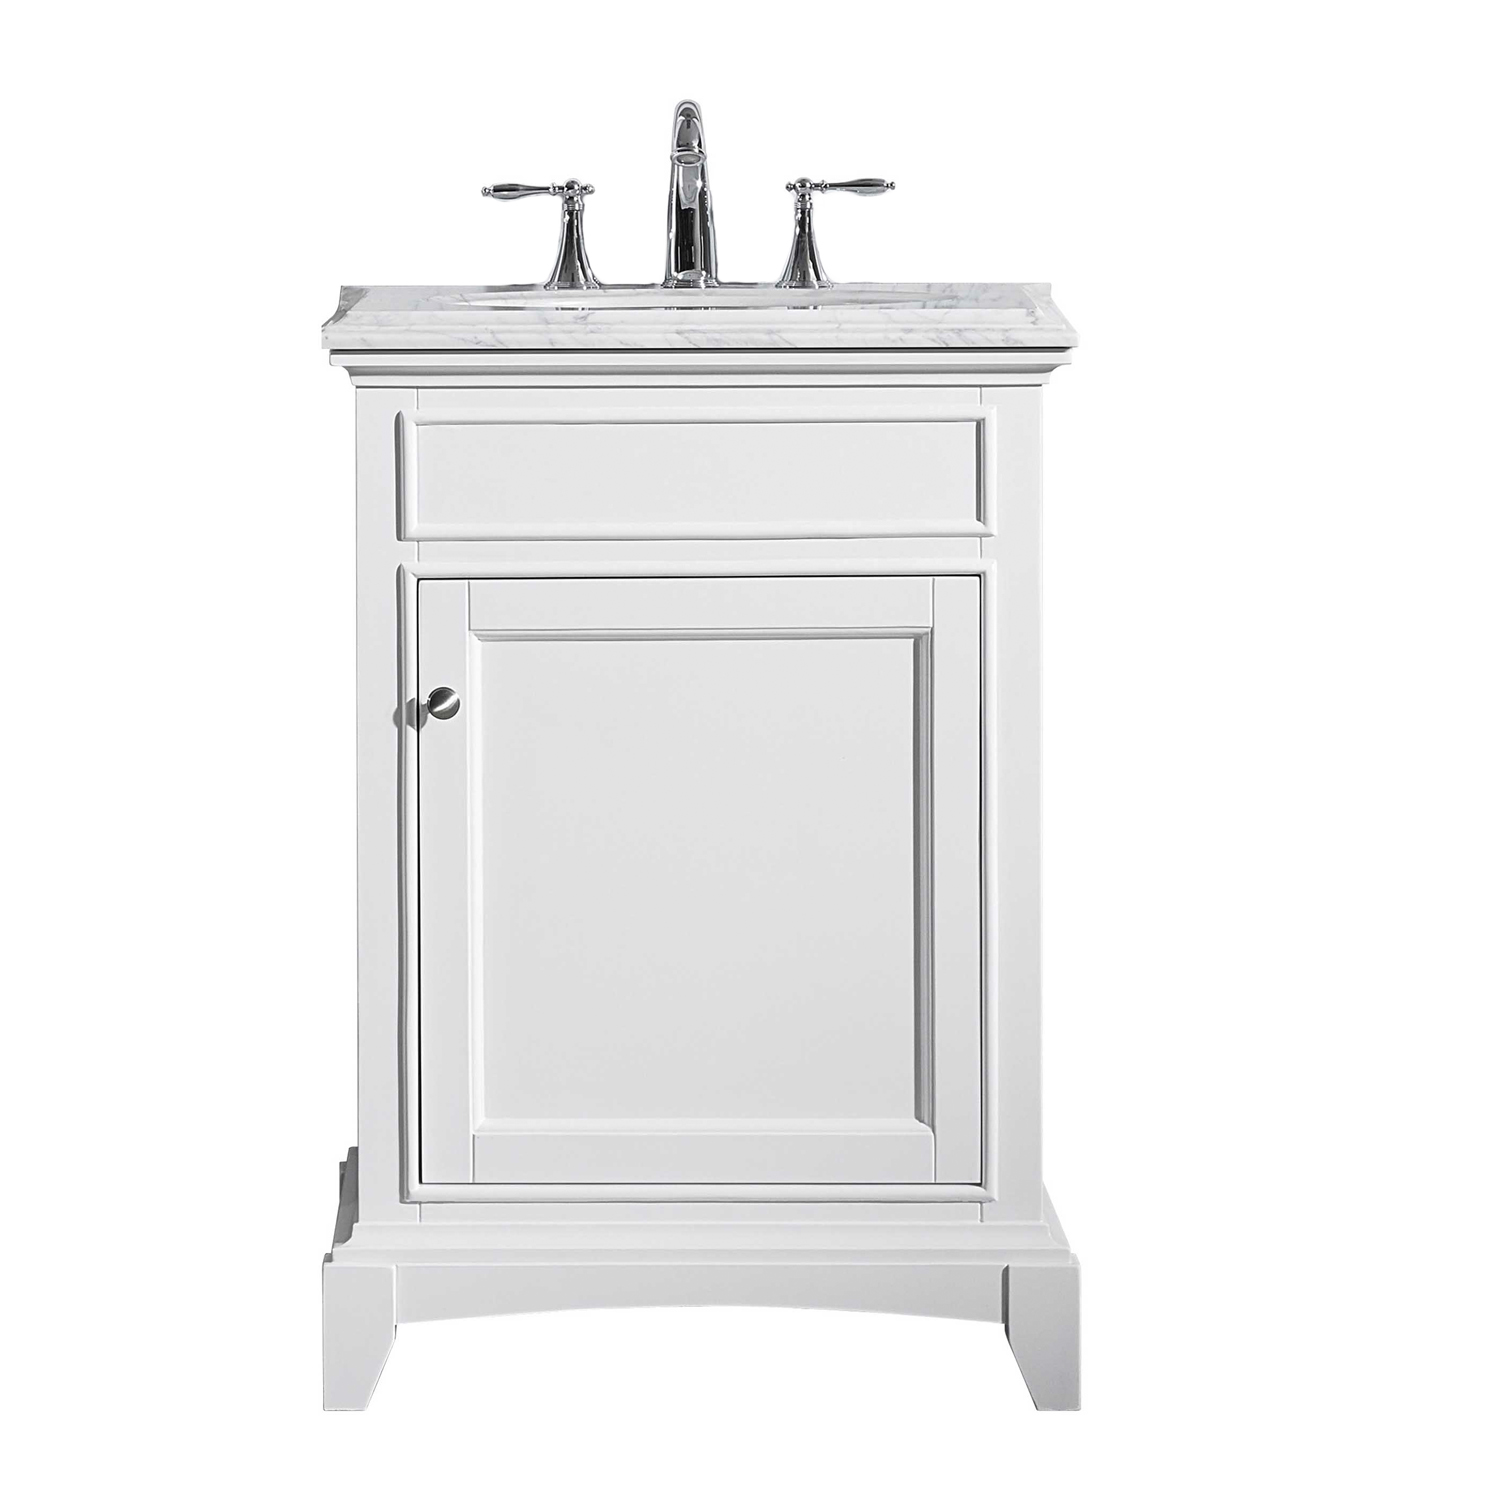 White Solid Wood Bathroom Vanity Set, Solid Wood Bath Vanity 24 Inch